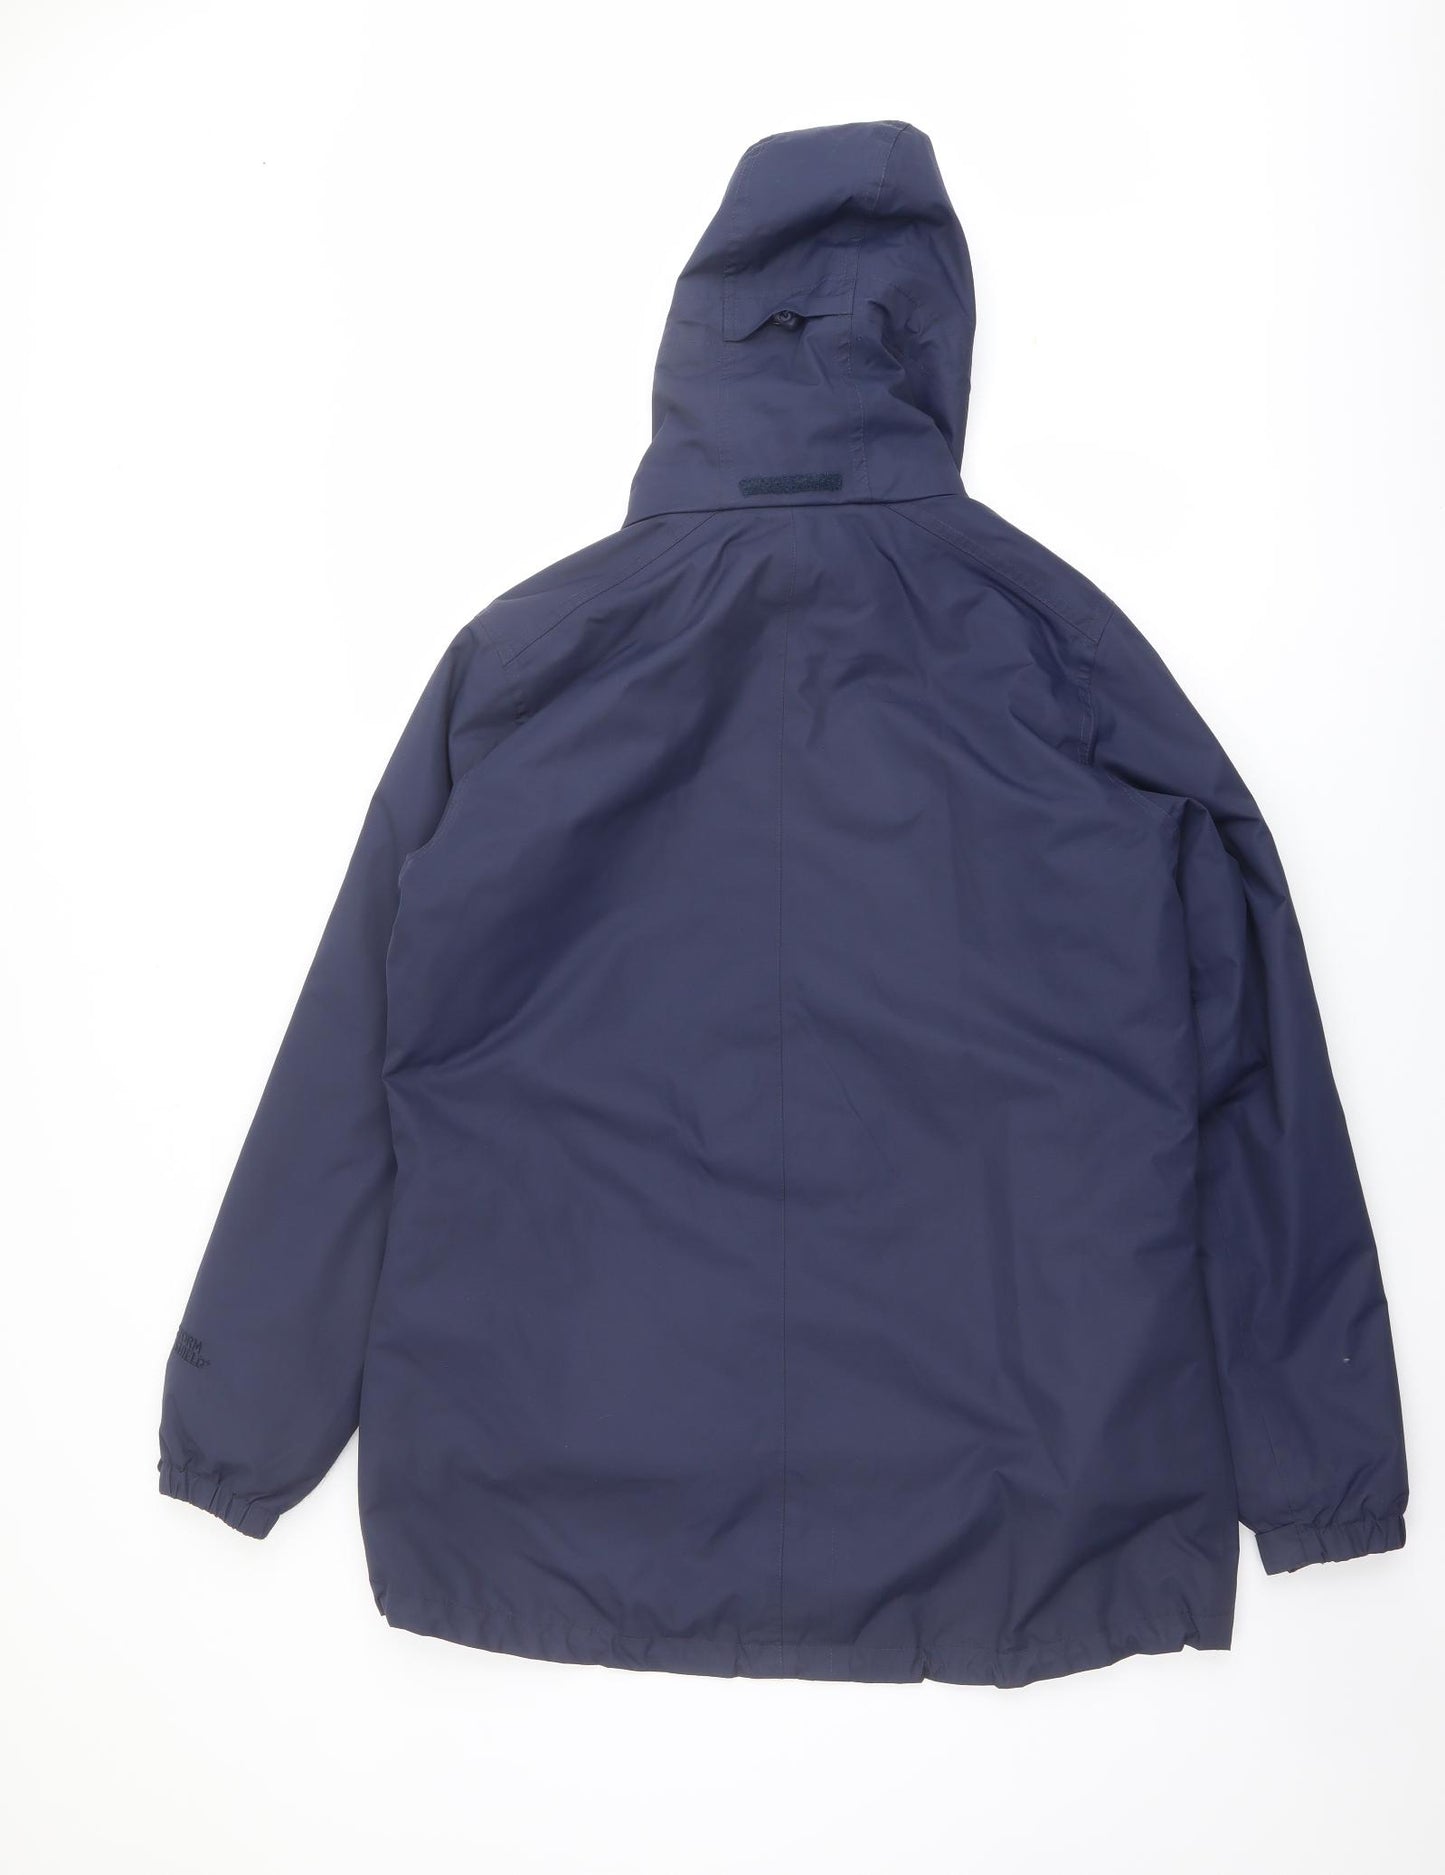 Peter Storm Womens Blue Windbreaker Jacket Size 14 Zip